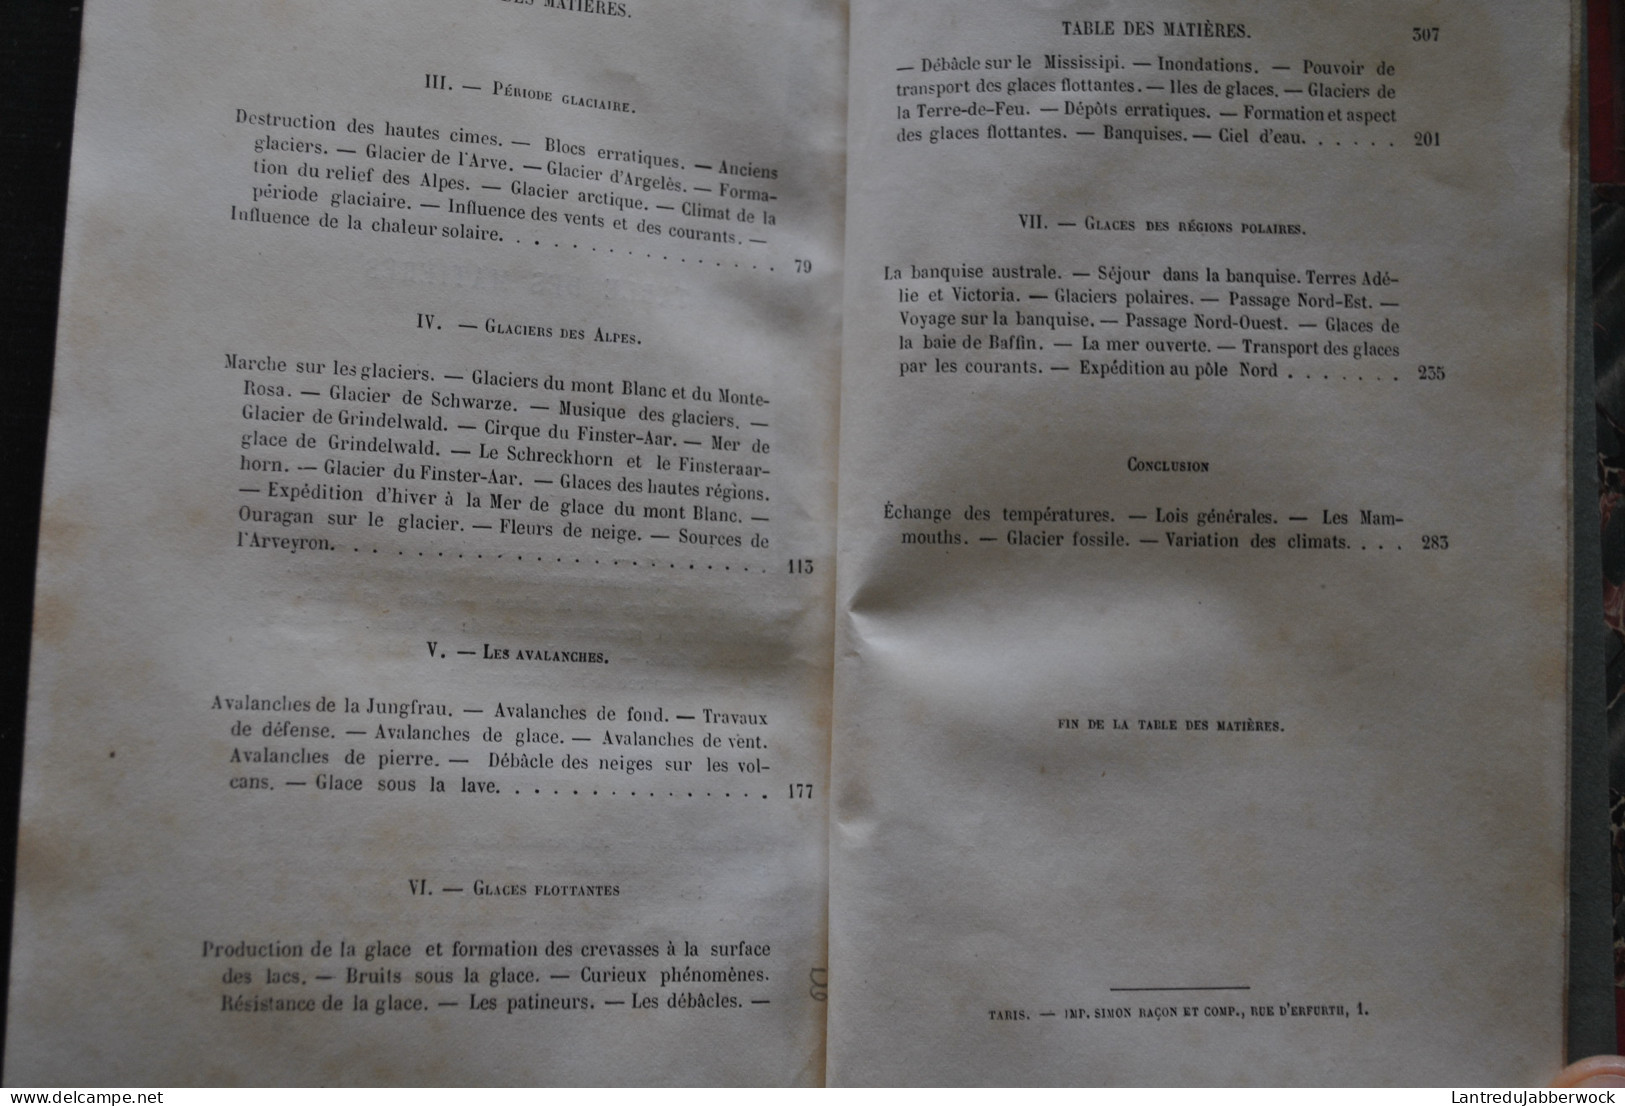 ZURCHER ET MARGOLLE LES GLACIERS BIBLIOTHEQUE DES MERVEILLES 1870 LIBRAIRIE HACHETTE GRAVURES SABATIER RELIURE CUIR RARE